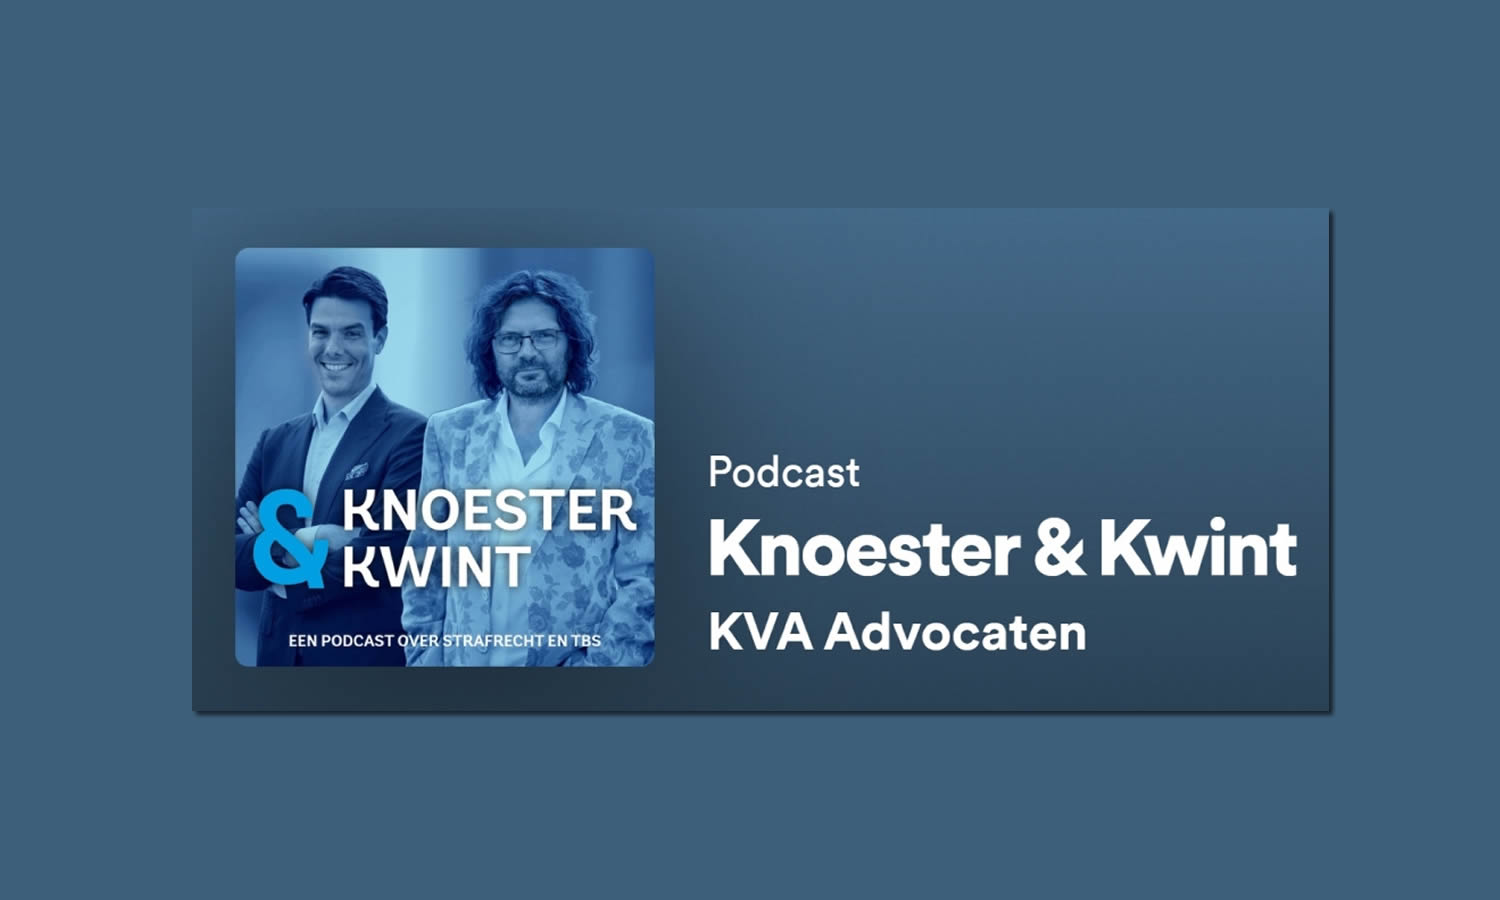 Podcast Knoester & Kwint met deze keer als gast Ramon Mens